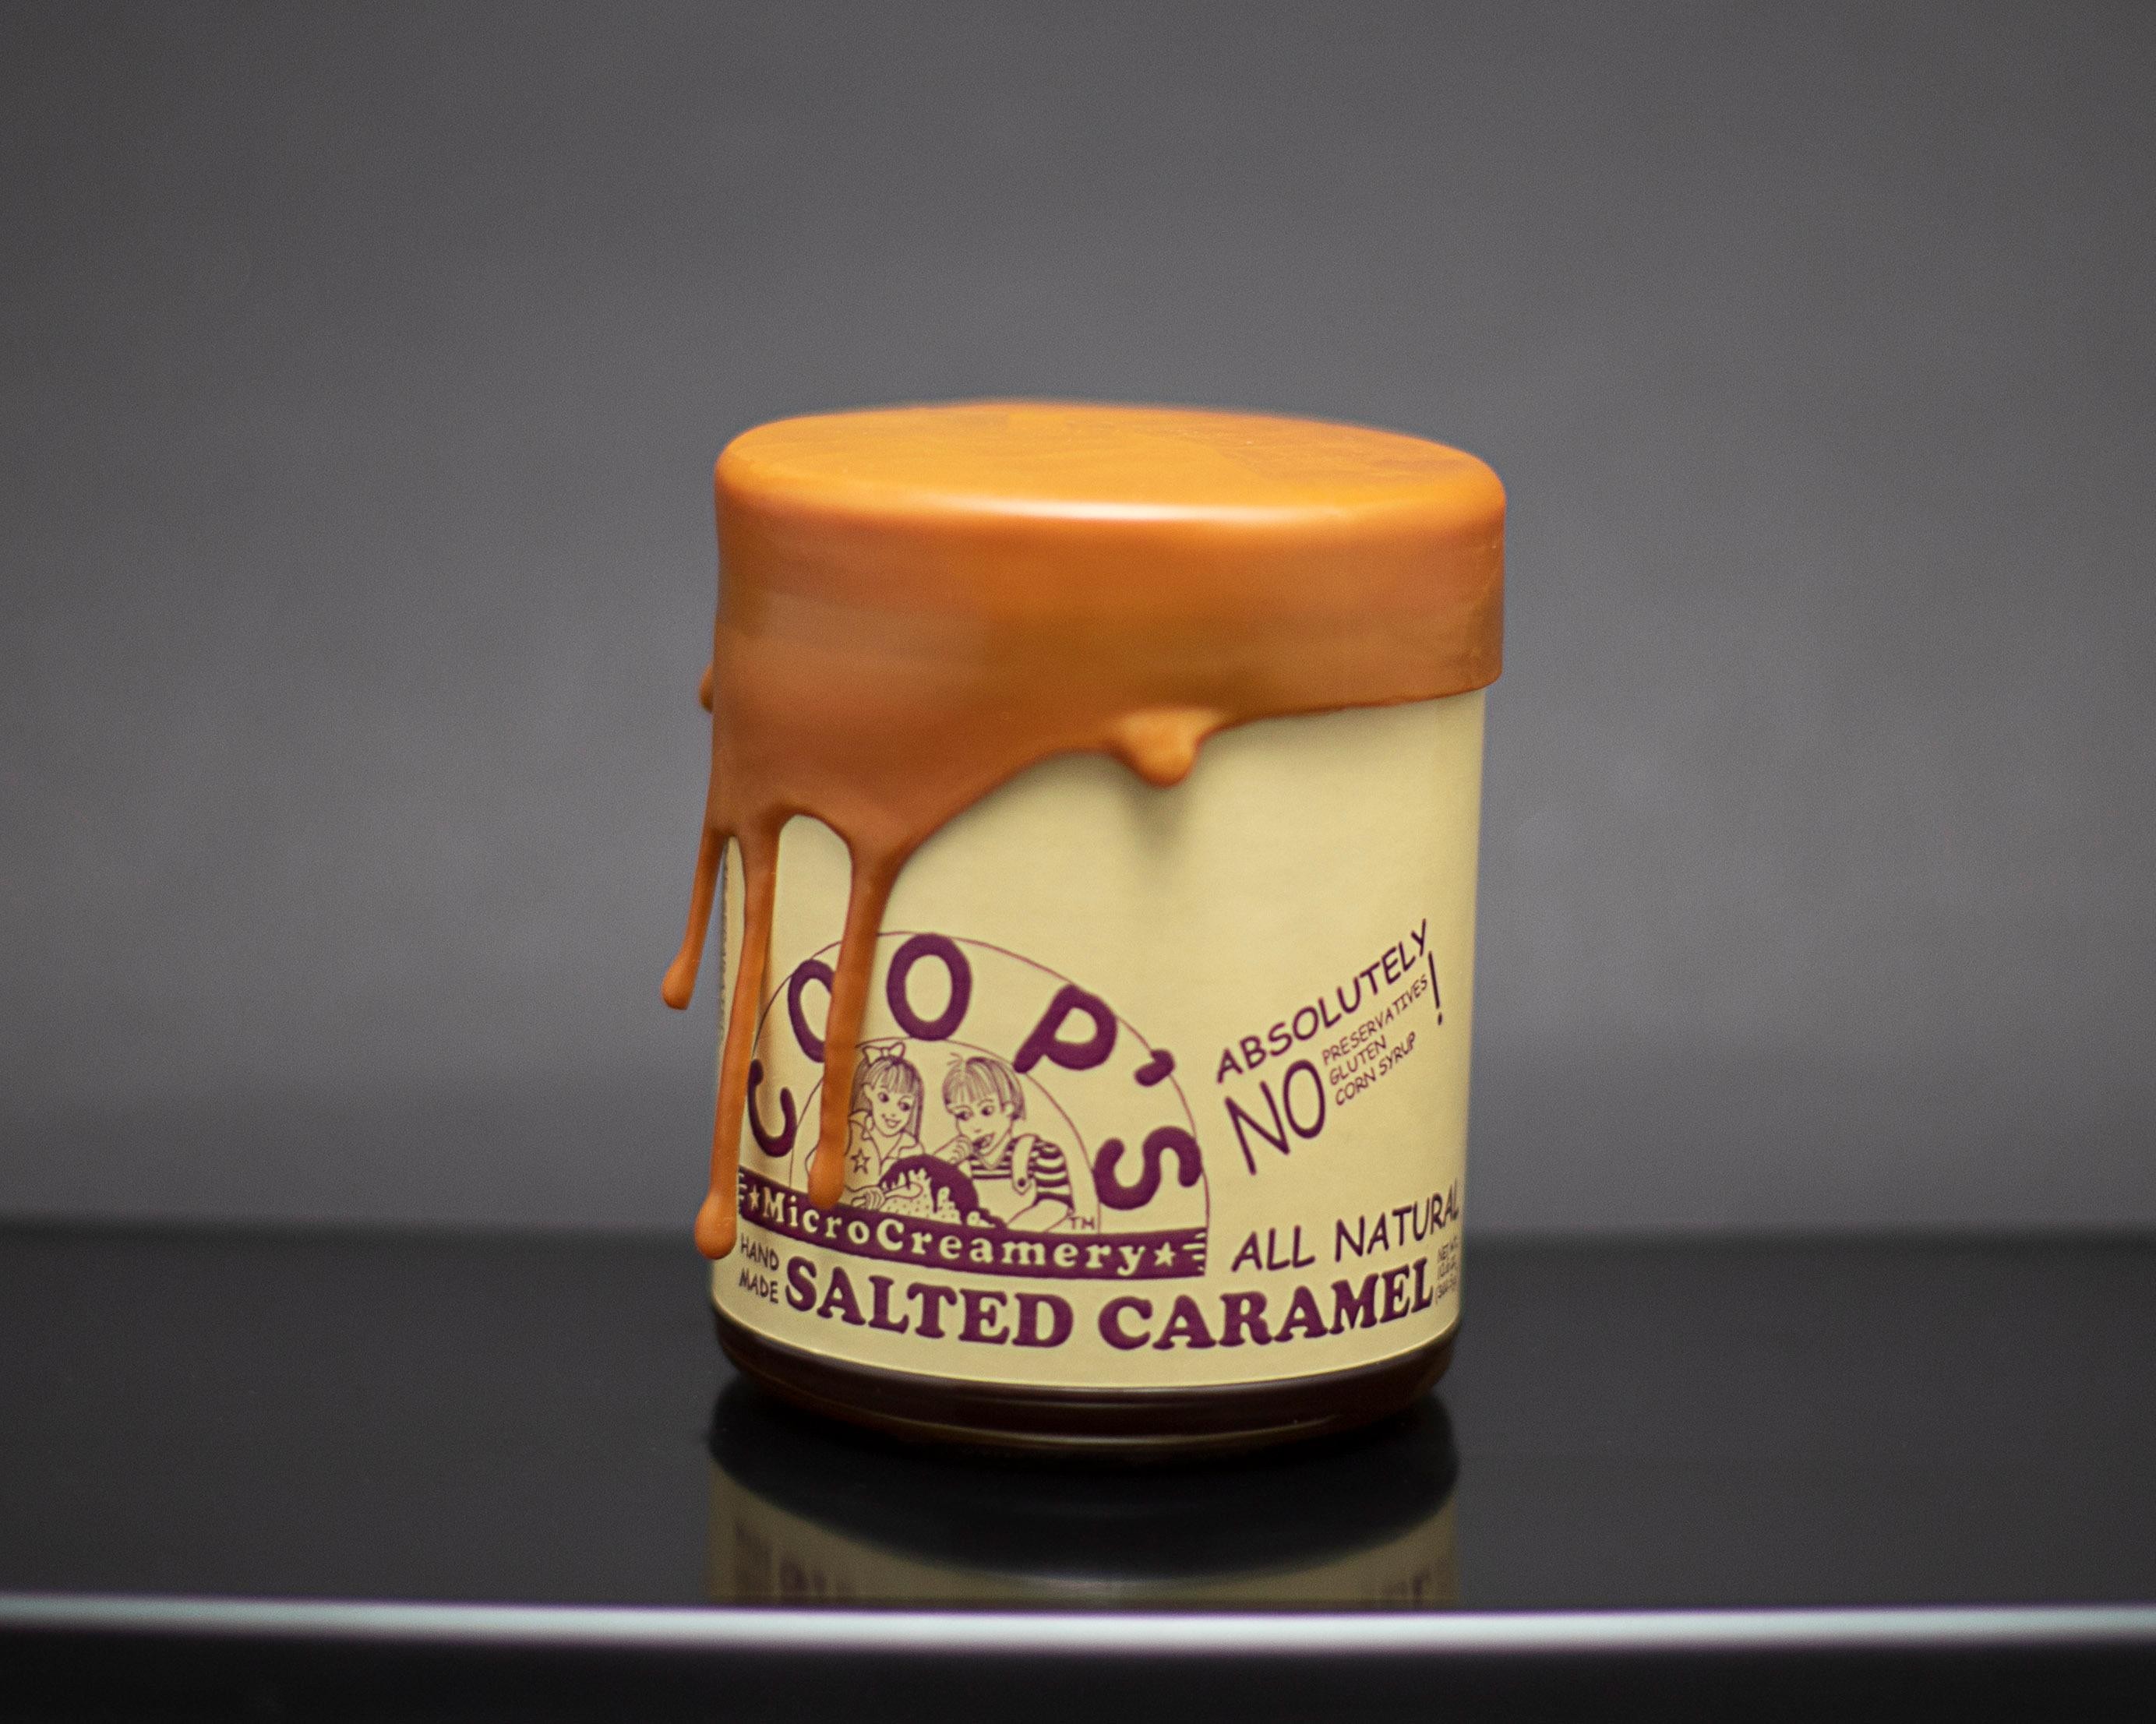 Coop's™ Salted Caramel Sauce